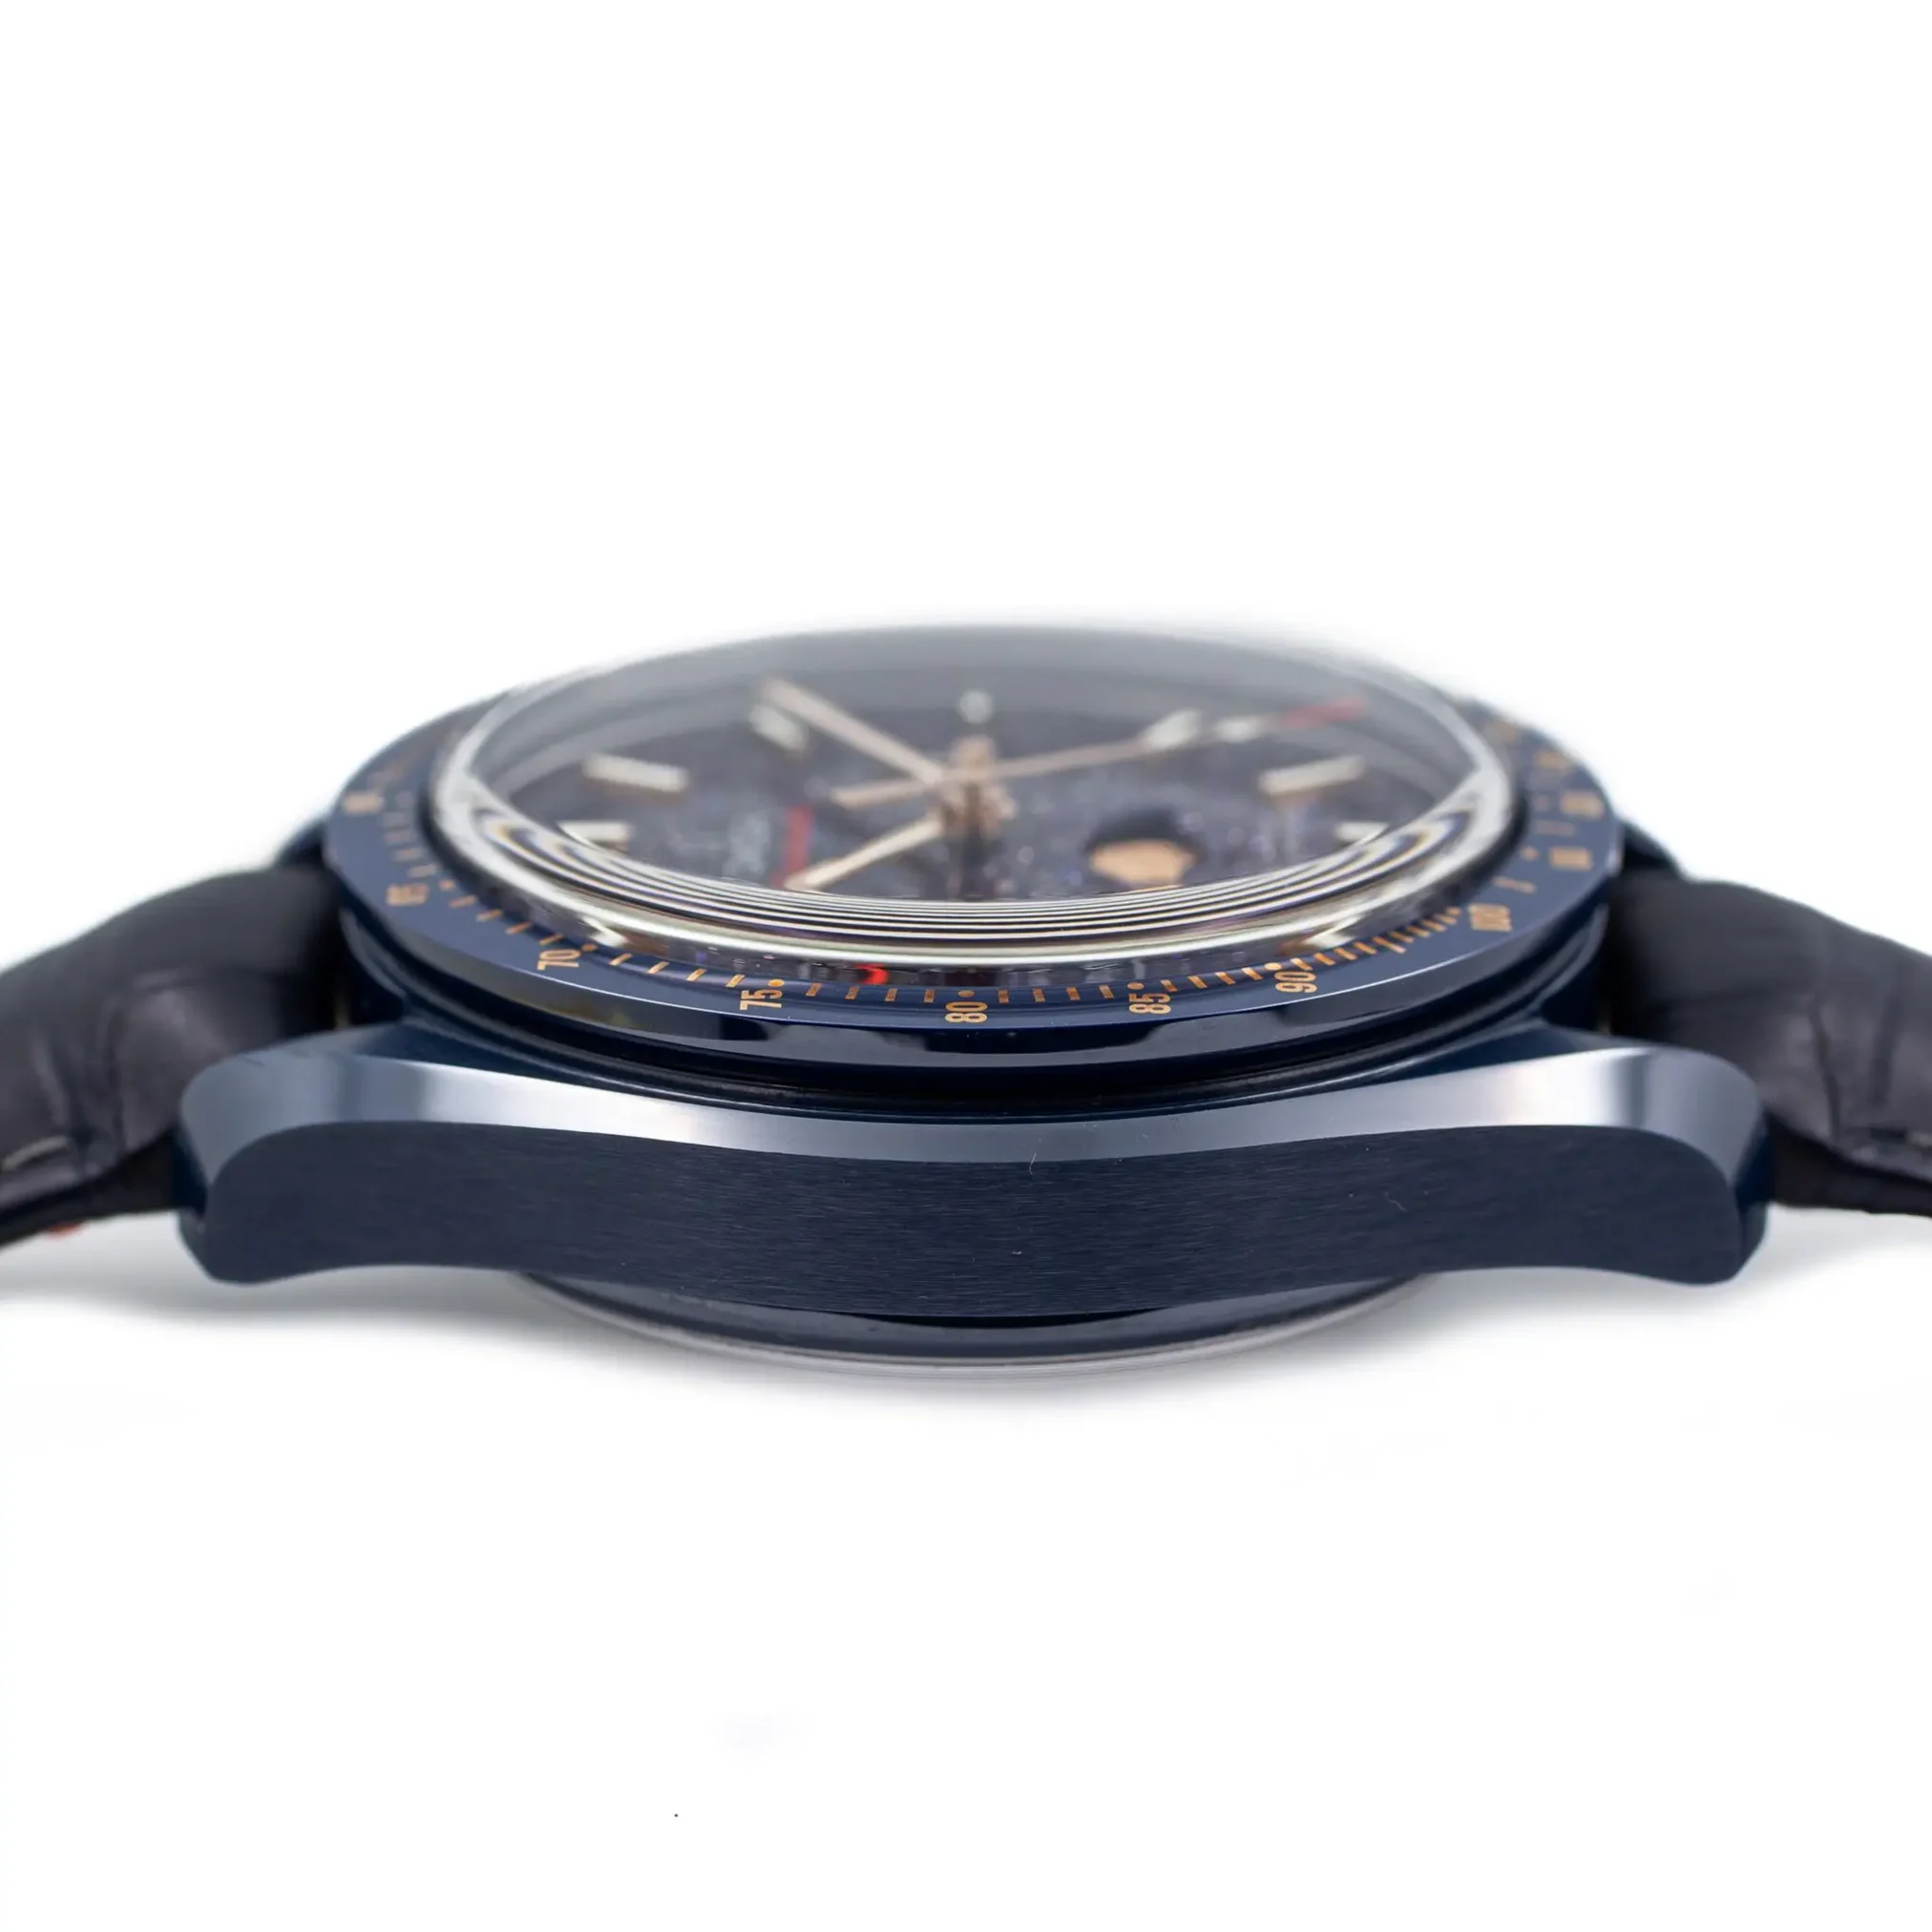 Đồng hồ Omega Seamaster Moonphase Chronometer Chronograph 304.93.44.52.03.002 mặt số màu xanh. Dây đeo bằng ceramic. Thân vỏ bằng ceramic.